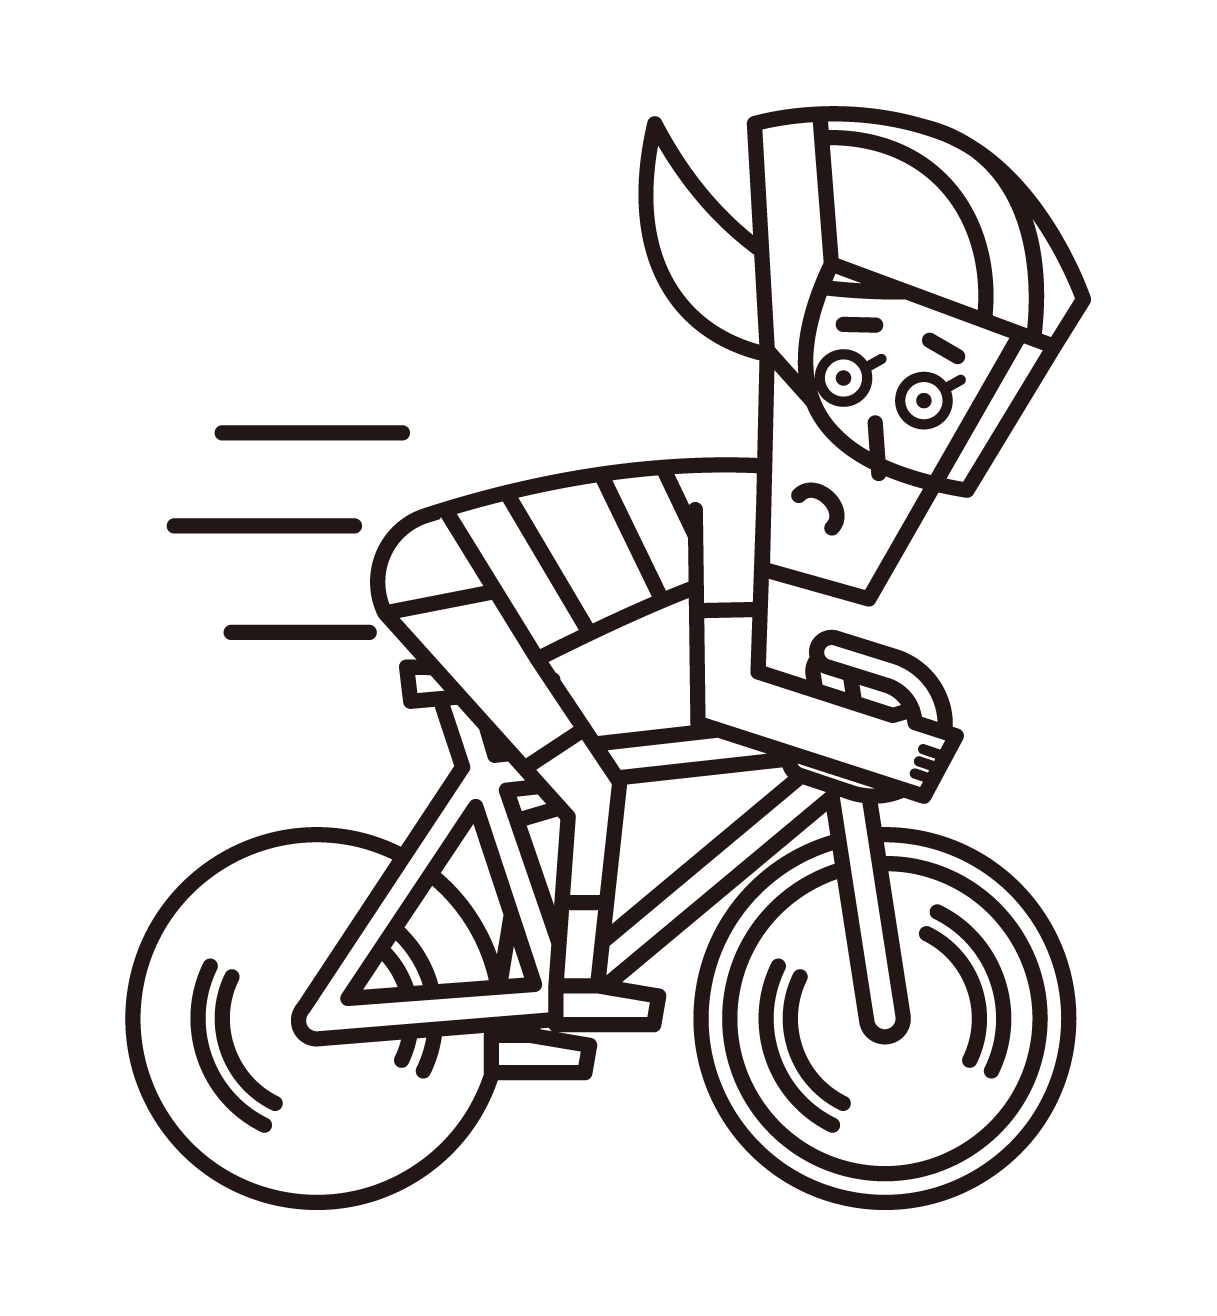 スプリンター（自転車トラック競技の女性選手）のイラスト